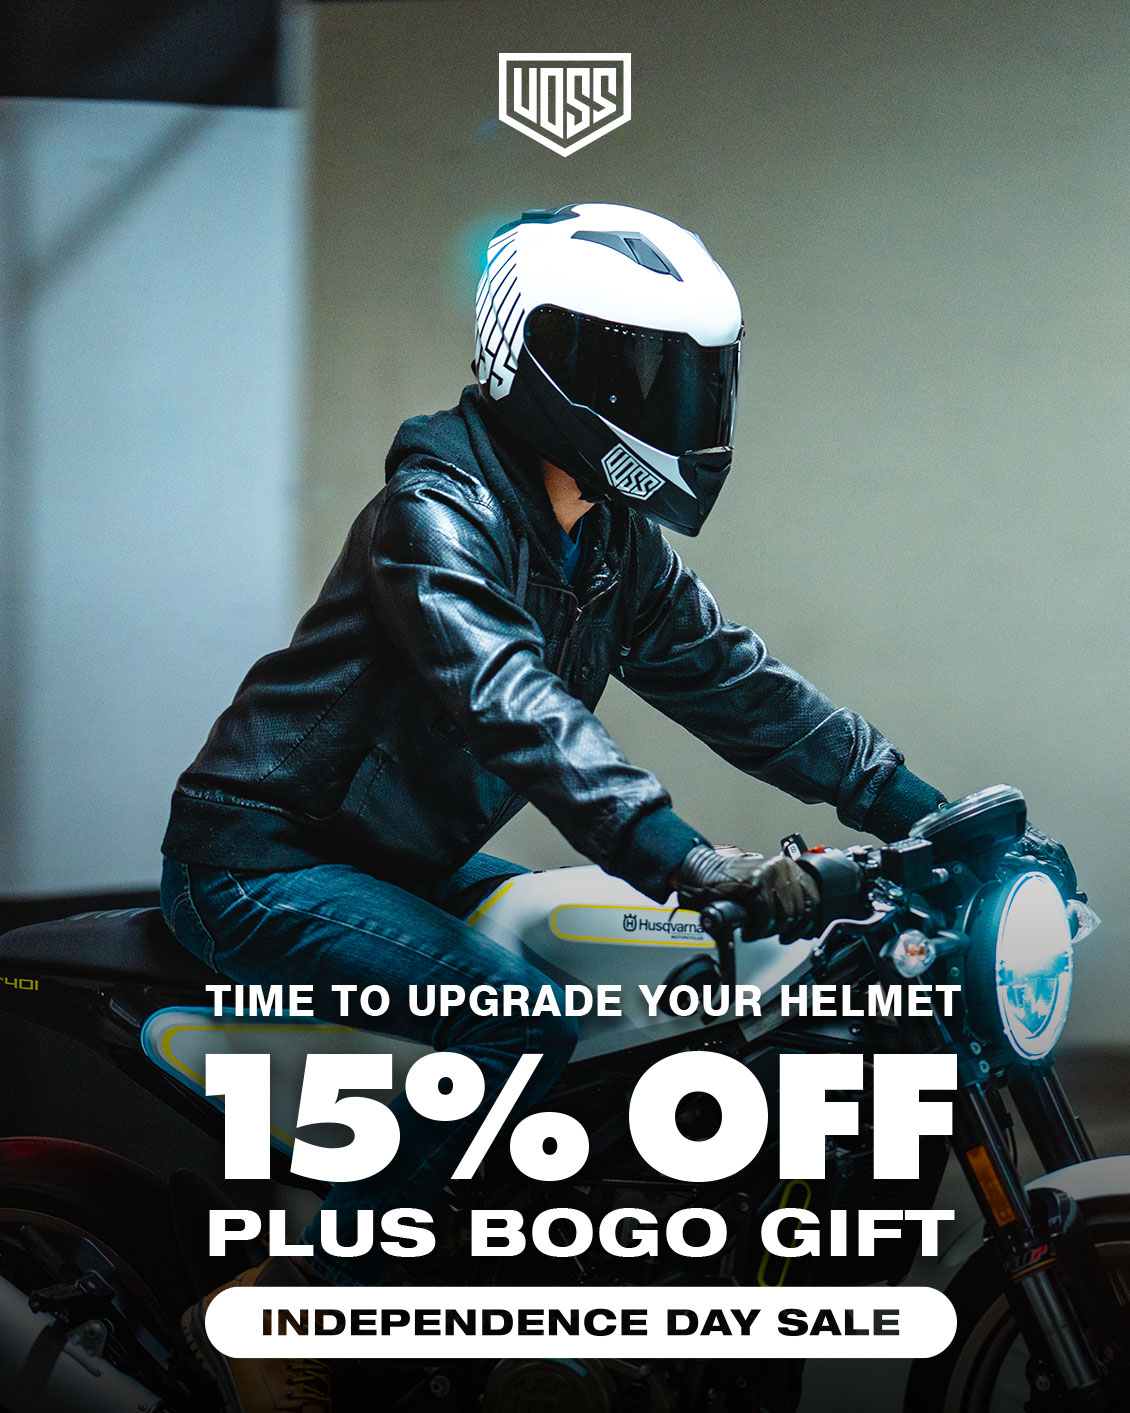 Voss 989 Moto-V Roy Cleo Helmet